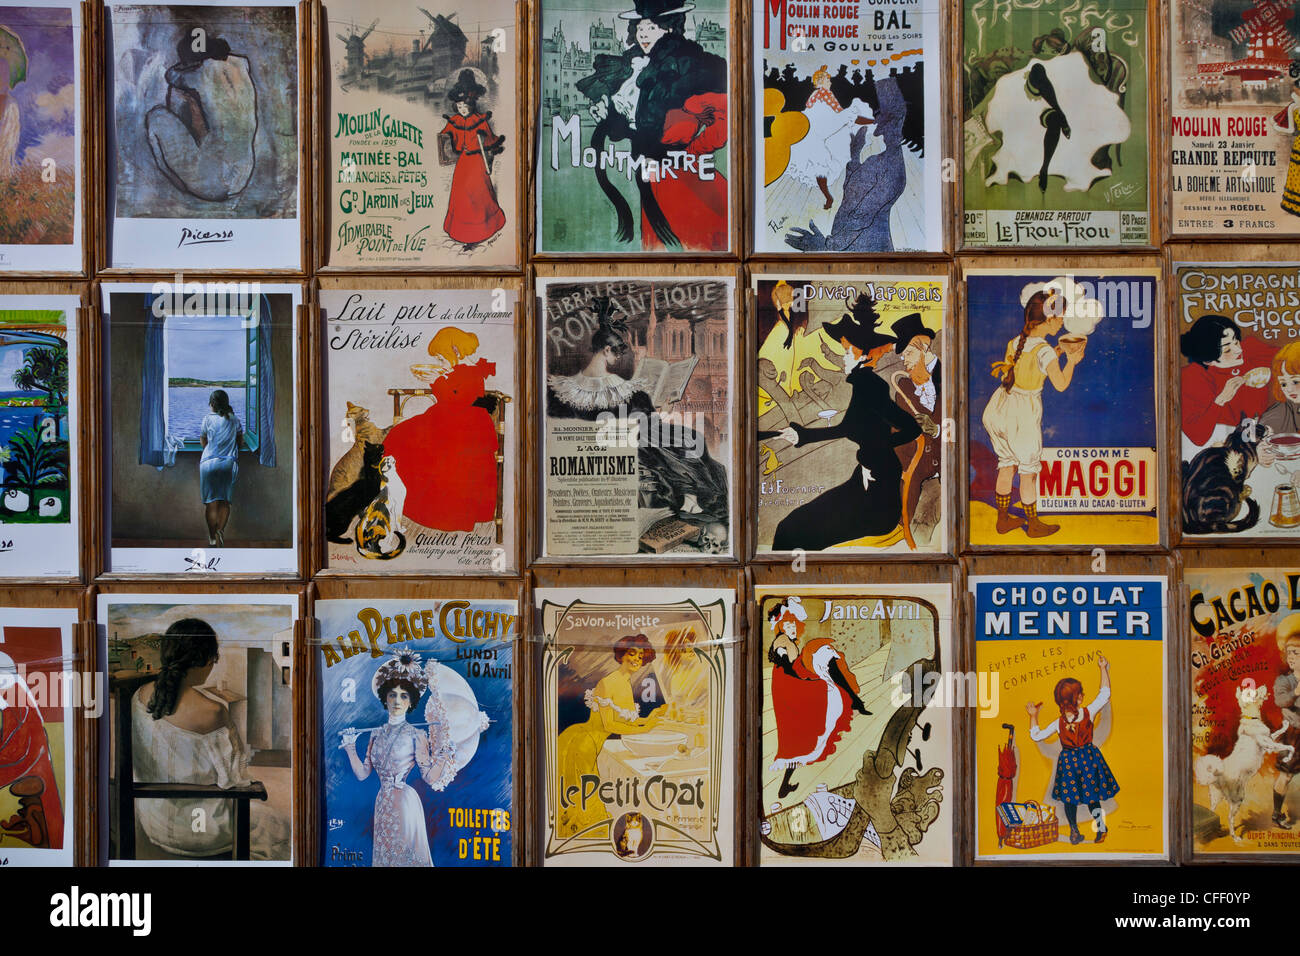 Vorstadt Plakate von Toulouse-Lautrec und anderen Künstlern, Place du Tertre, Montmartre, Paris, Frankreich Stockfoto